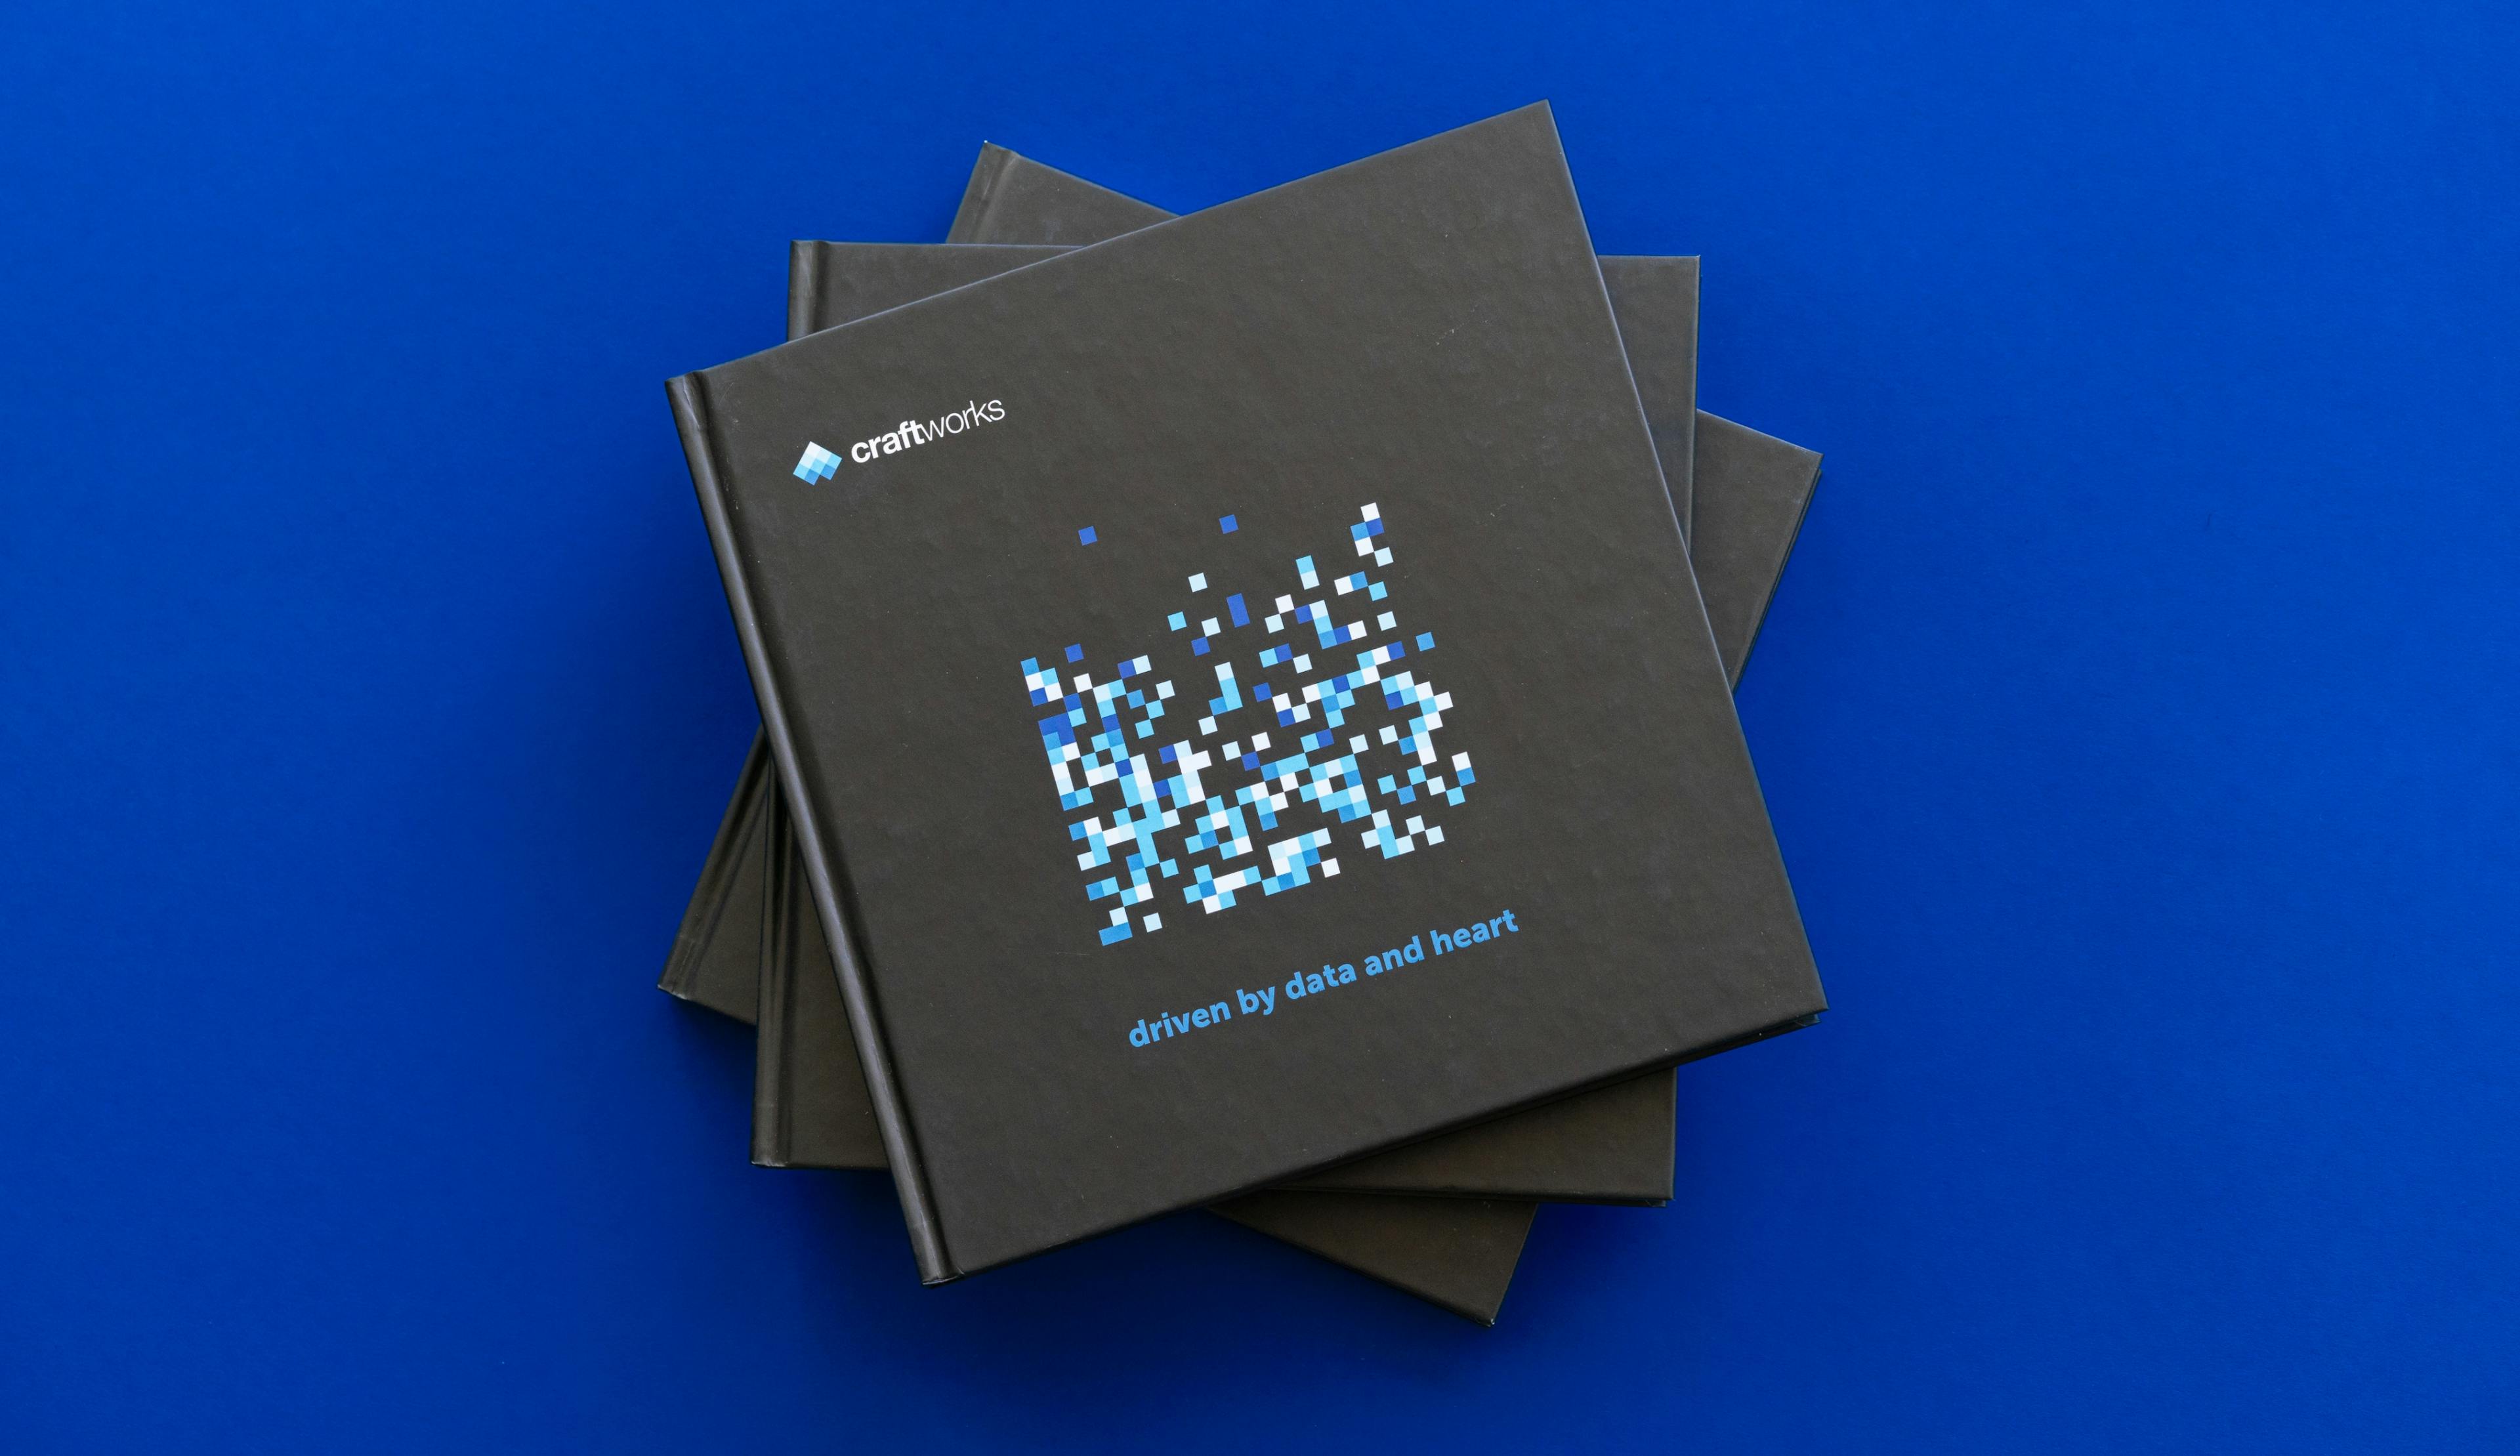 Das craftworks brand book cover, mit dem craftworks Logo, das Pixelart Pattern mit der headline: driven by data and heart © good matters